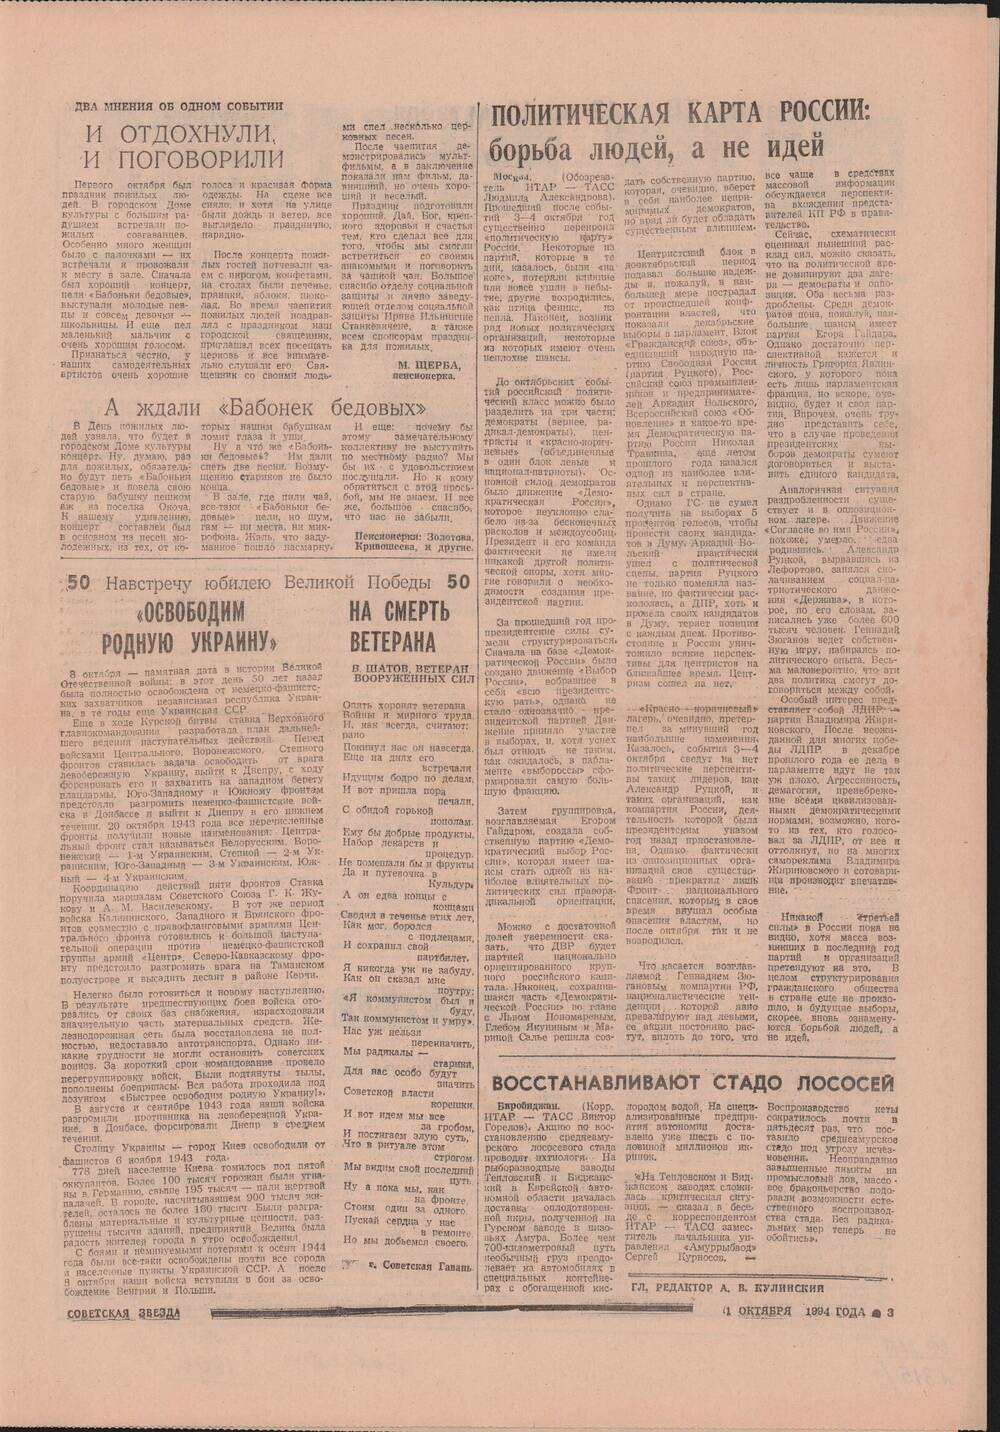 Газета «Советская звезда» № 195 (14444) от 11.10.1994 под рубрикой «50 лет Великой Победы».